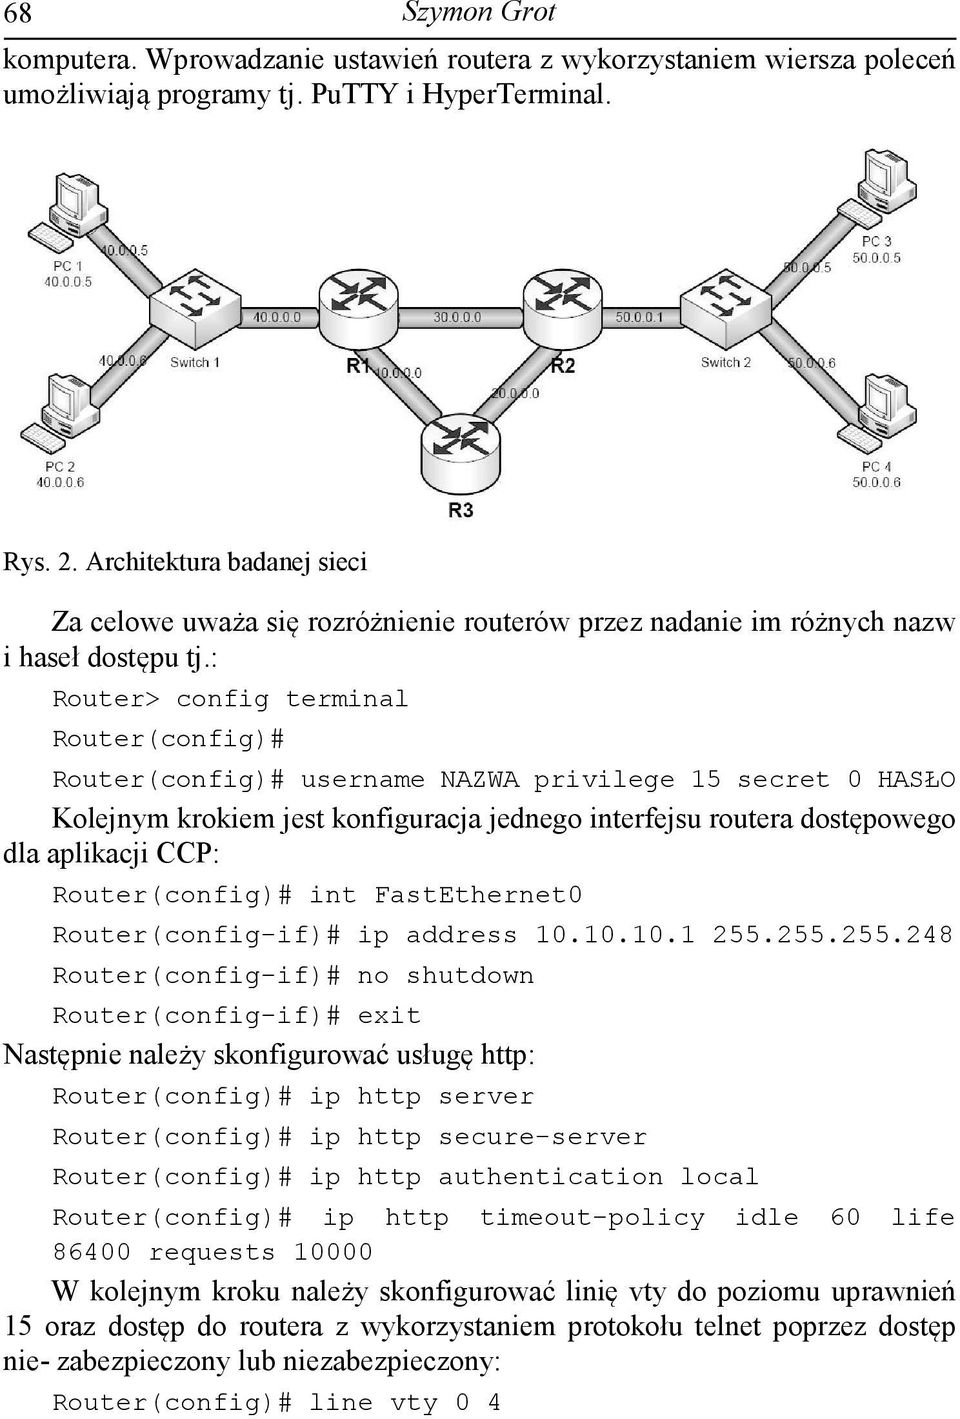 : Router> config terminal Router(config)# Router(config)# username NAZWA privilege 15 secret 0 HASŁO Kolejnym krokiem jest konfiguracja jednego interfejsu routera dostępowego dla aplikacji CCP: